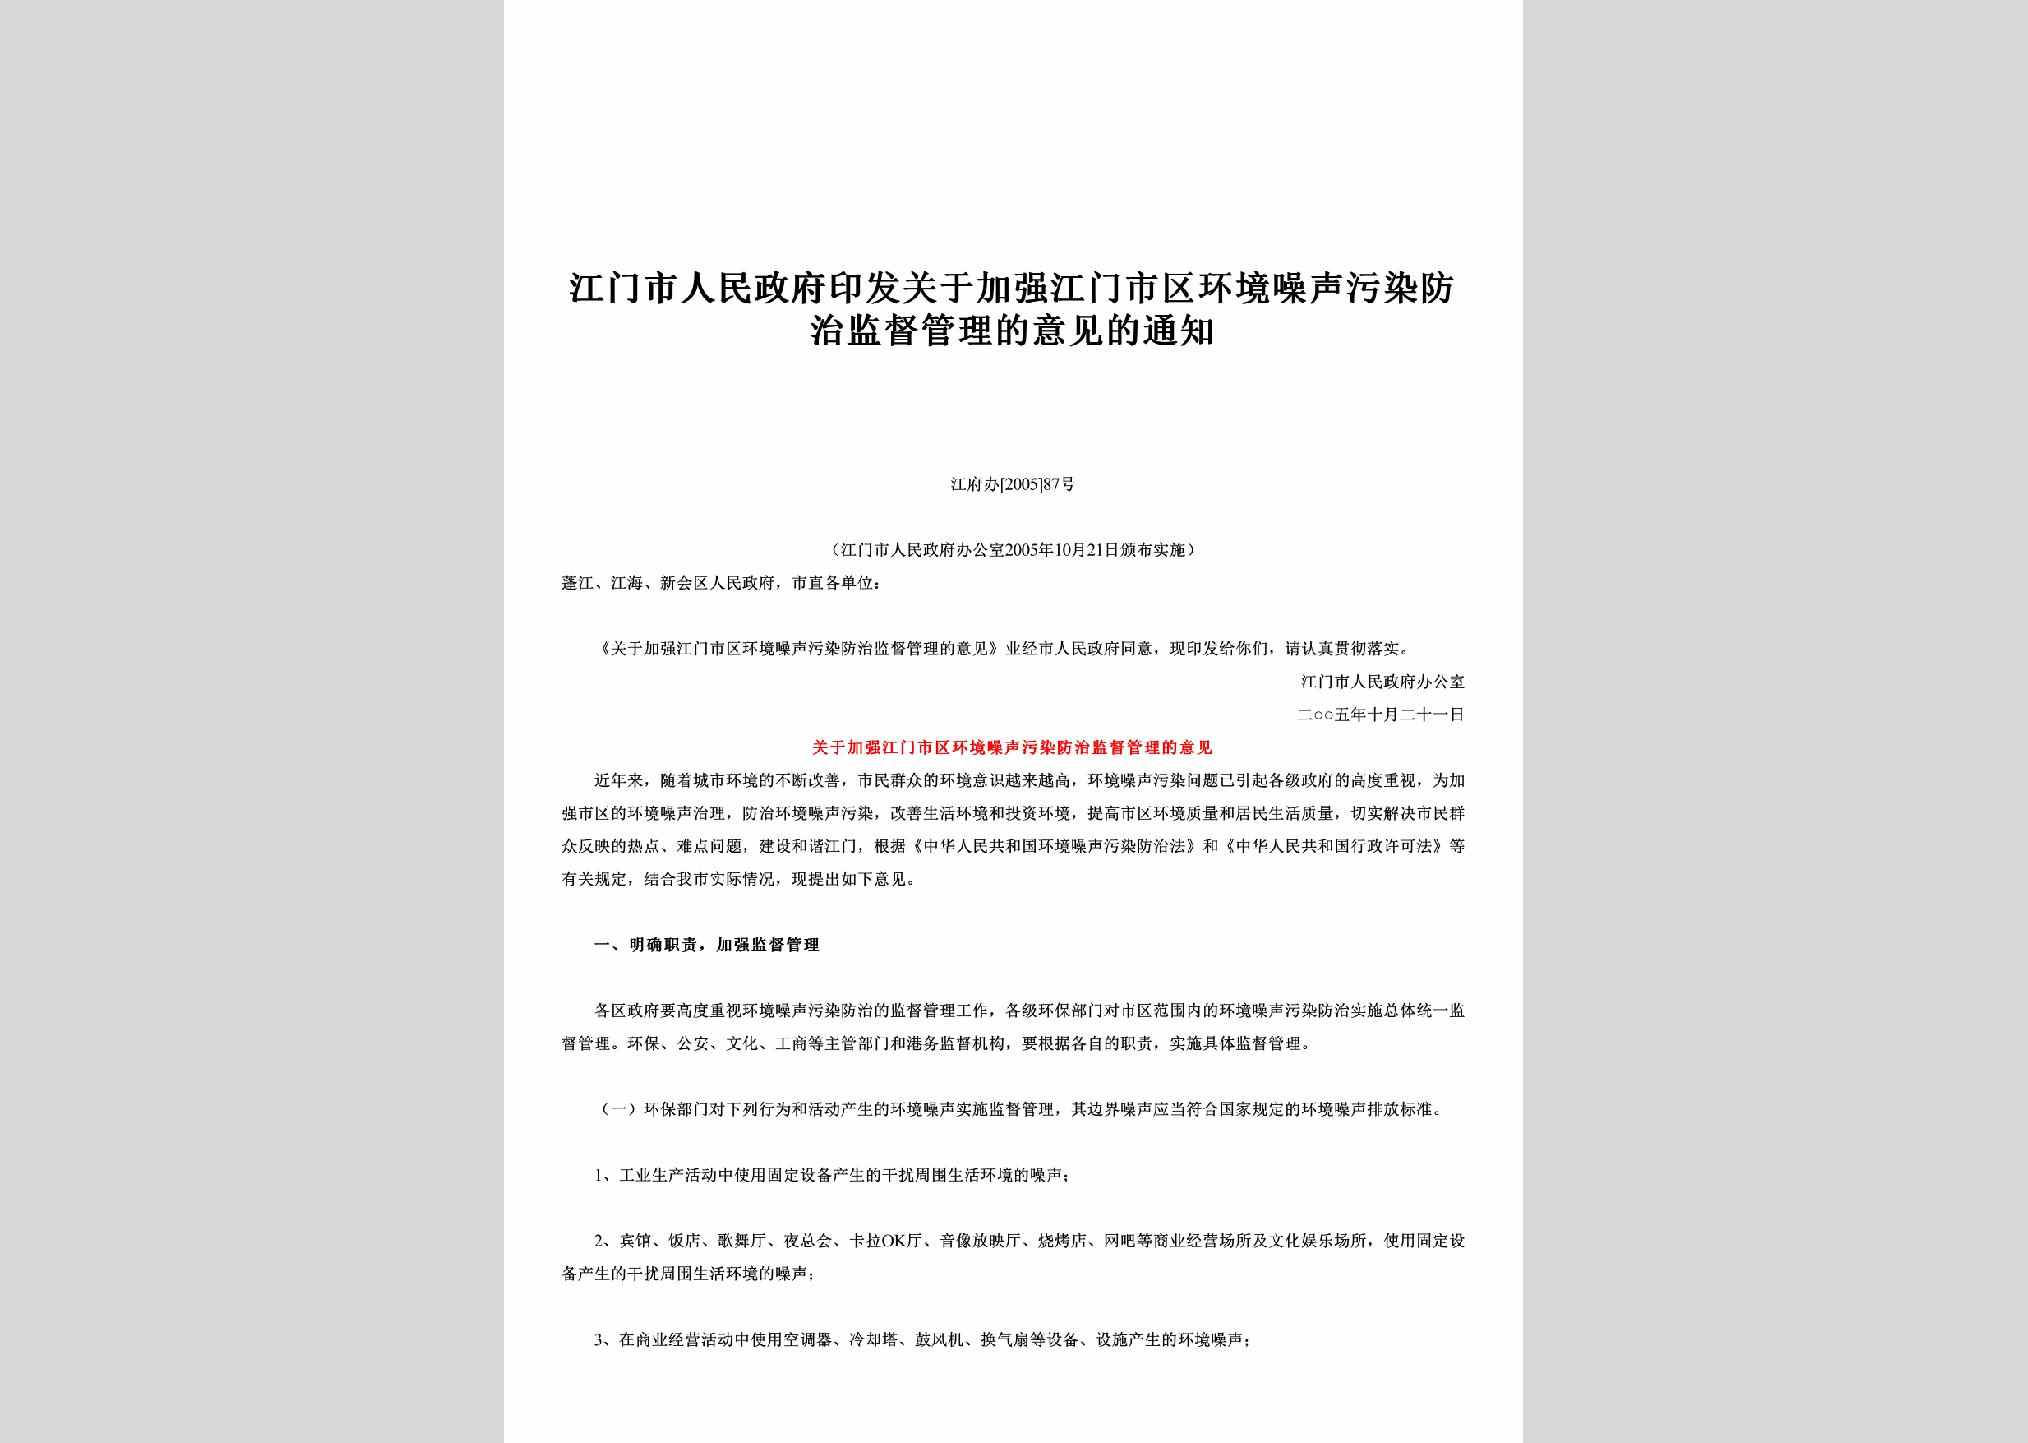 江府办[2005]87号：印发关于加强江门市区环境噪声污染防治监督管理的意见的通知